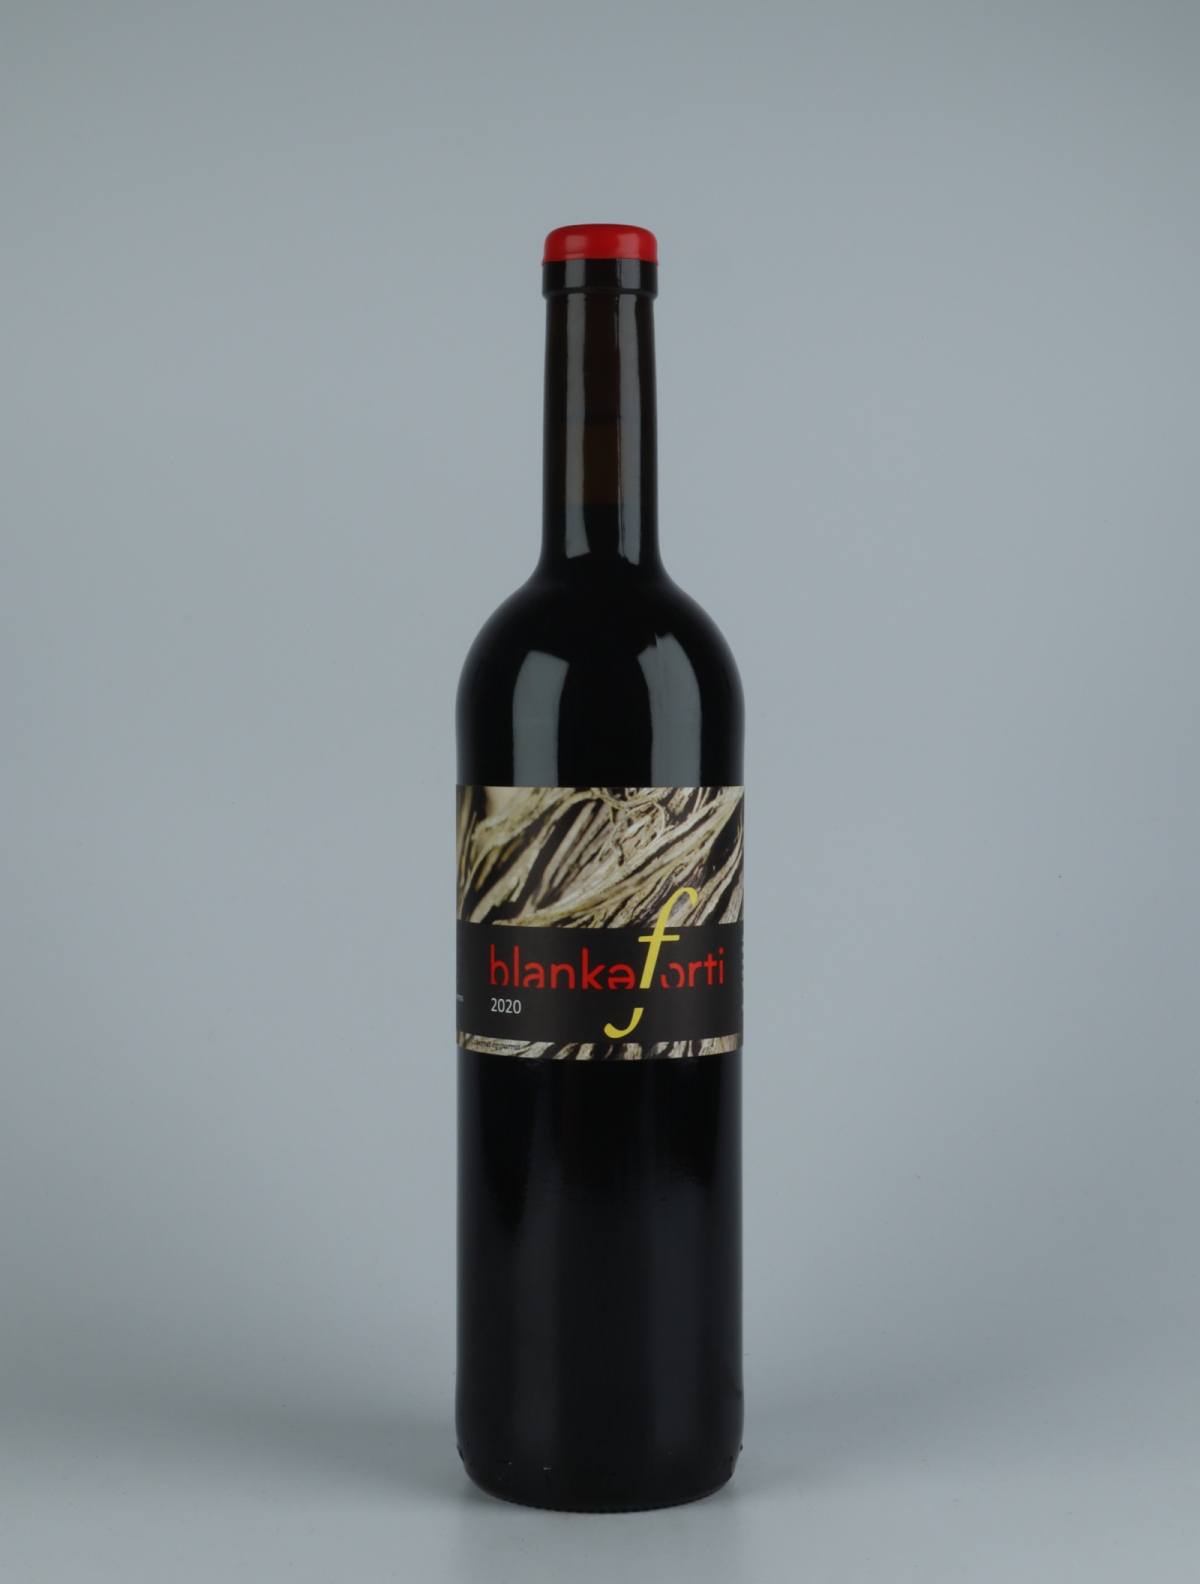 En flaske 2020 Blankaforti Rødvin fra Jordi Llorens, Catalonien i Spanien